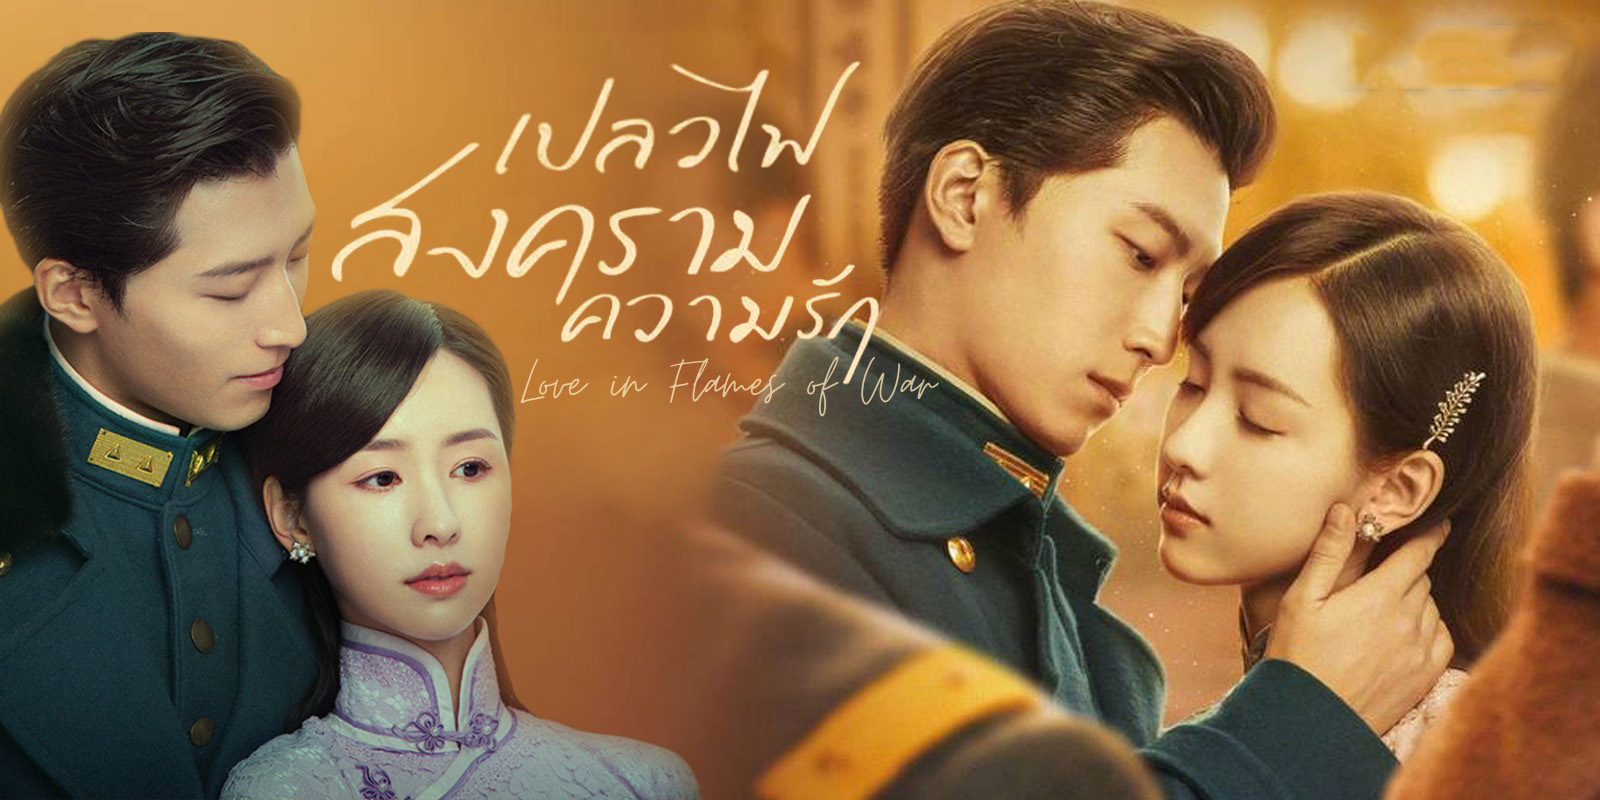 ดูซีรี่ย์จีน Love in Flames of War เปลวไฟ สงคราม ความรัก พากย์ไทย